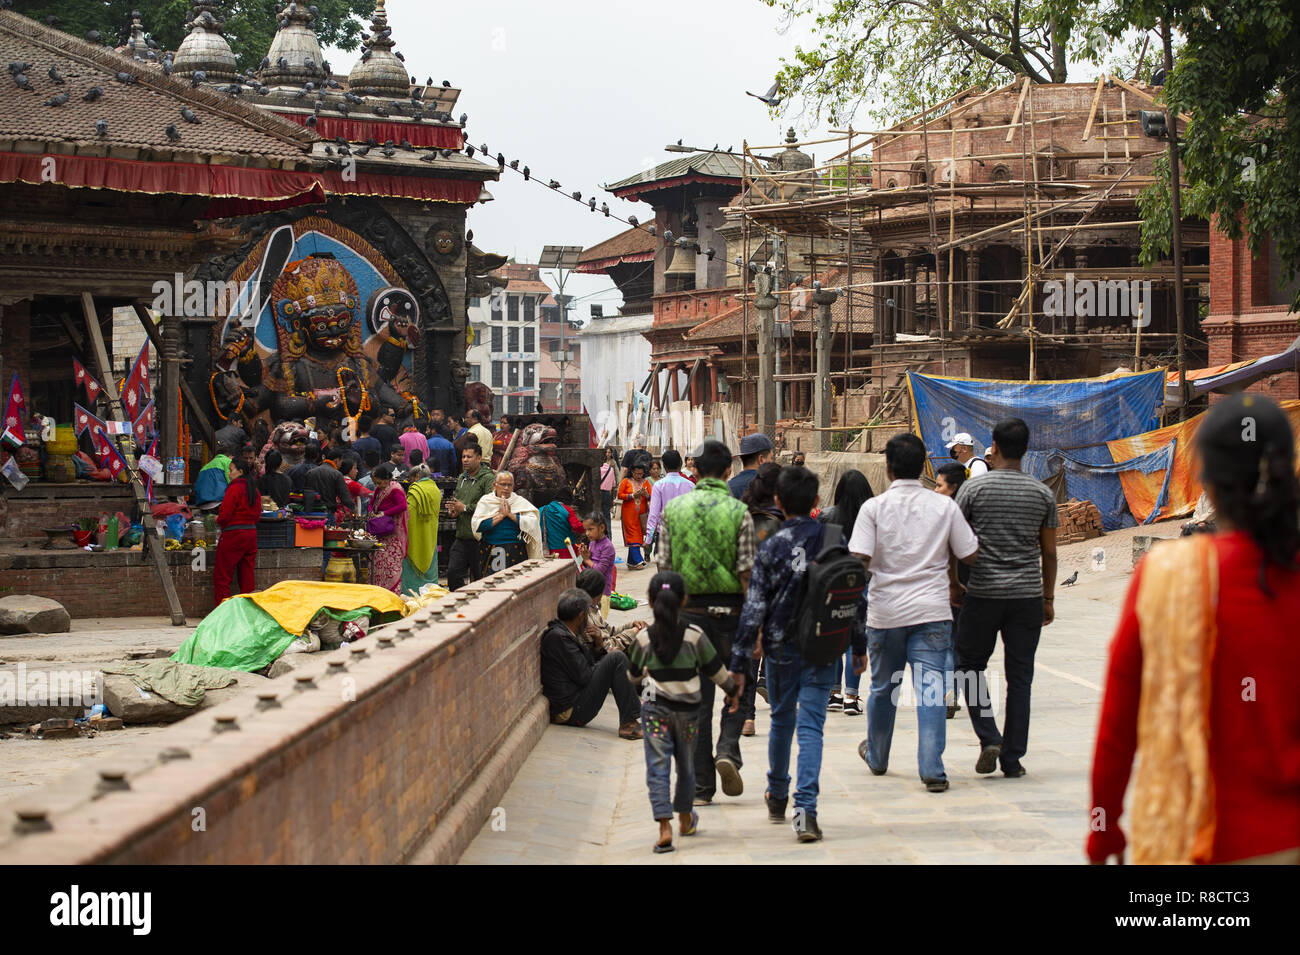 Anhänger verehren Kal Bhairav in Kathmandu Durbar Square während der der Nepalesischen Neues Jahr 2073 Festival. Stockfoto